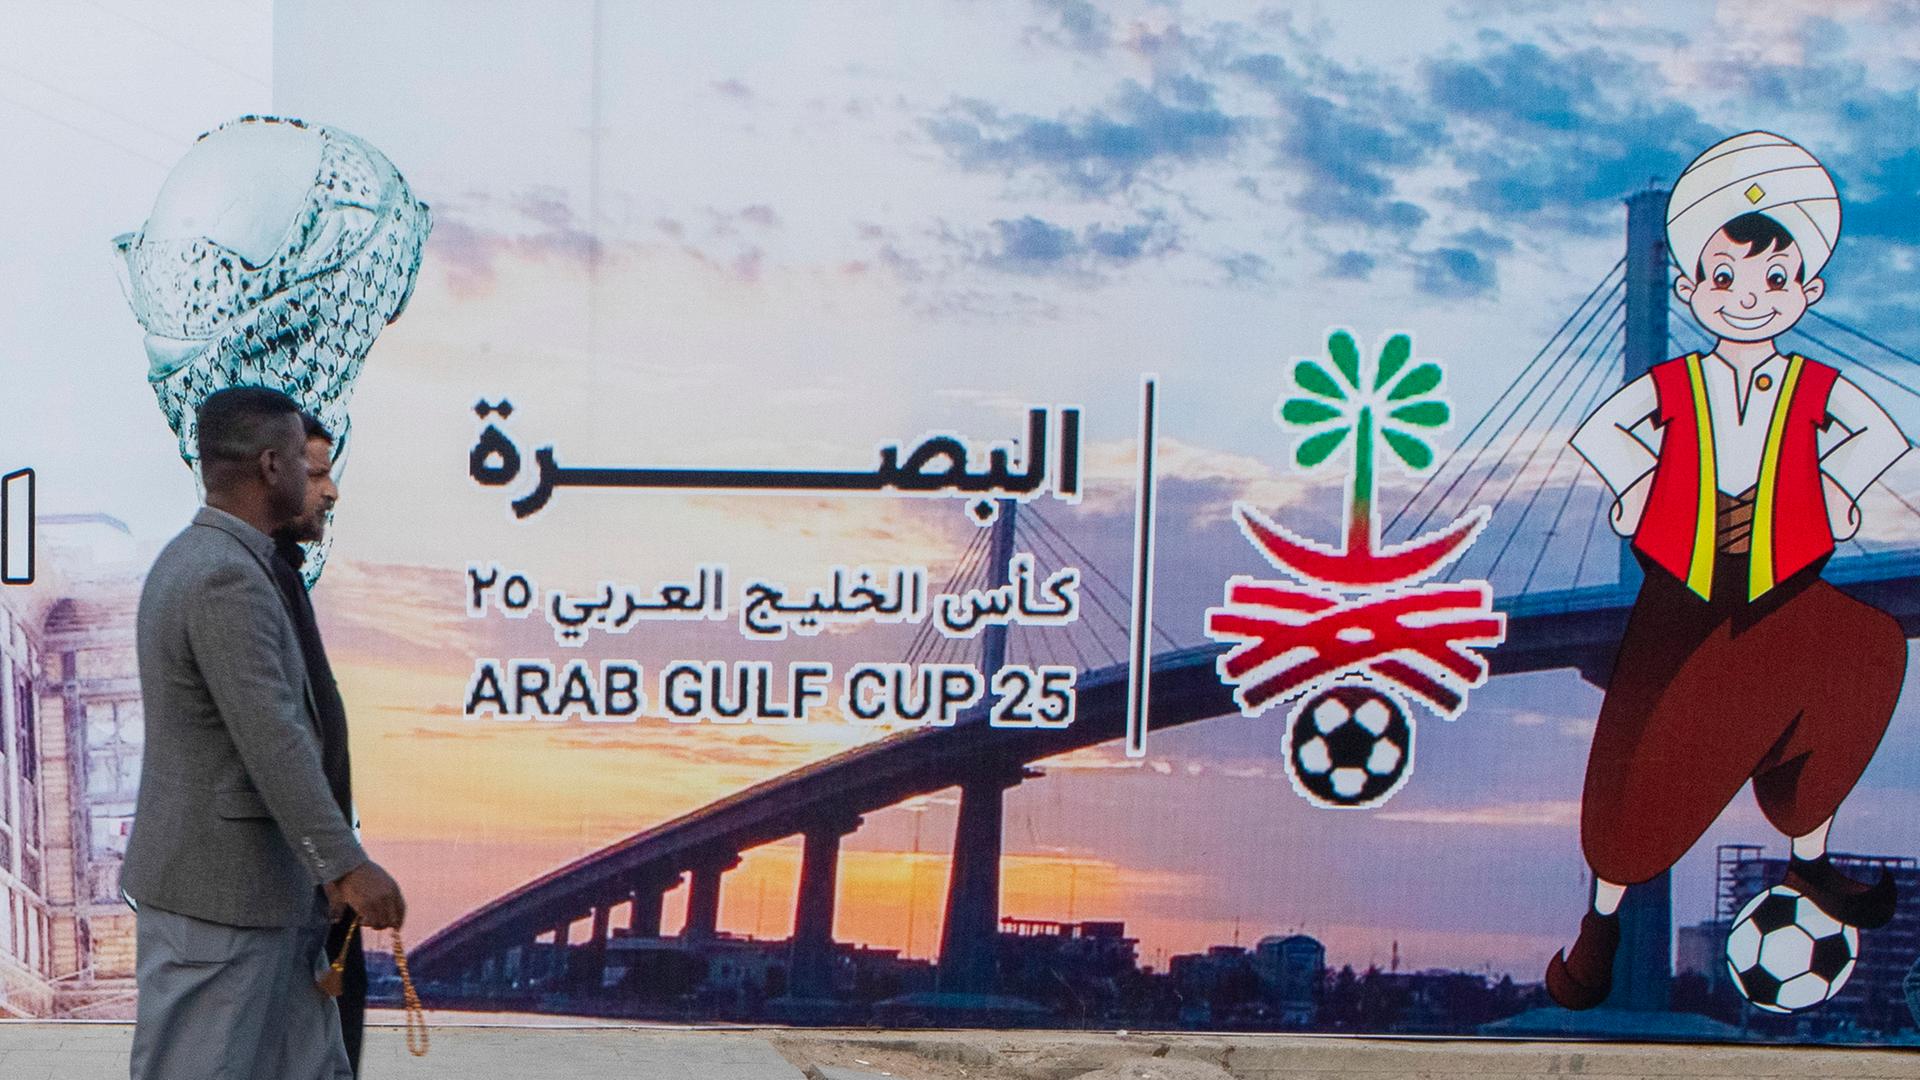 Menschen gehen an einer Plakatwand vorbei, die den Arabischen Golfpokal in Basra ankündigt